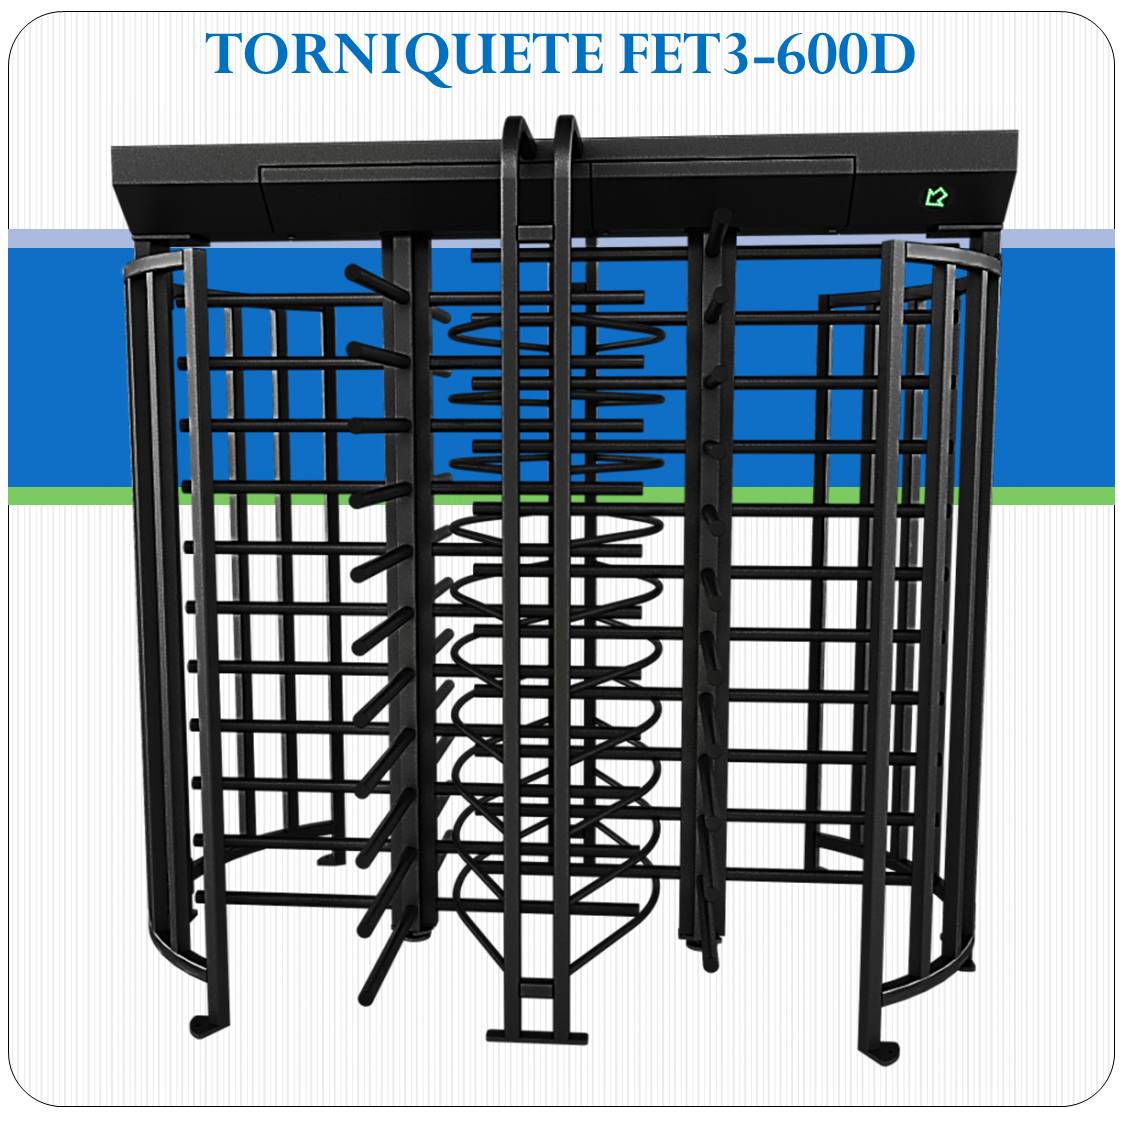 Torniquete FET3-600D